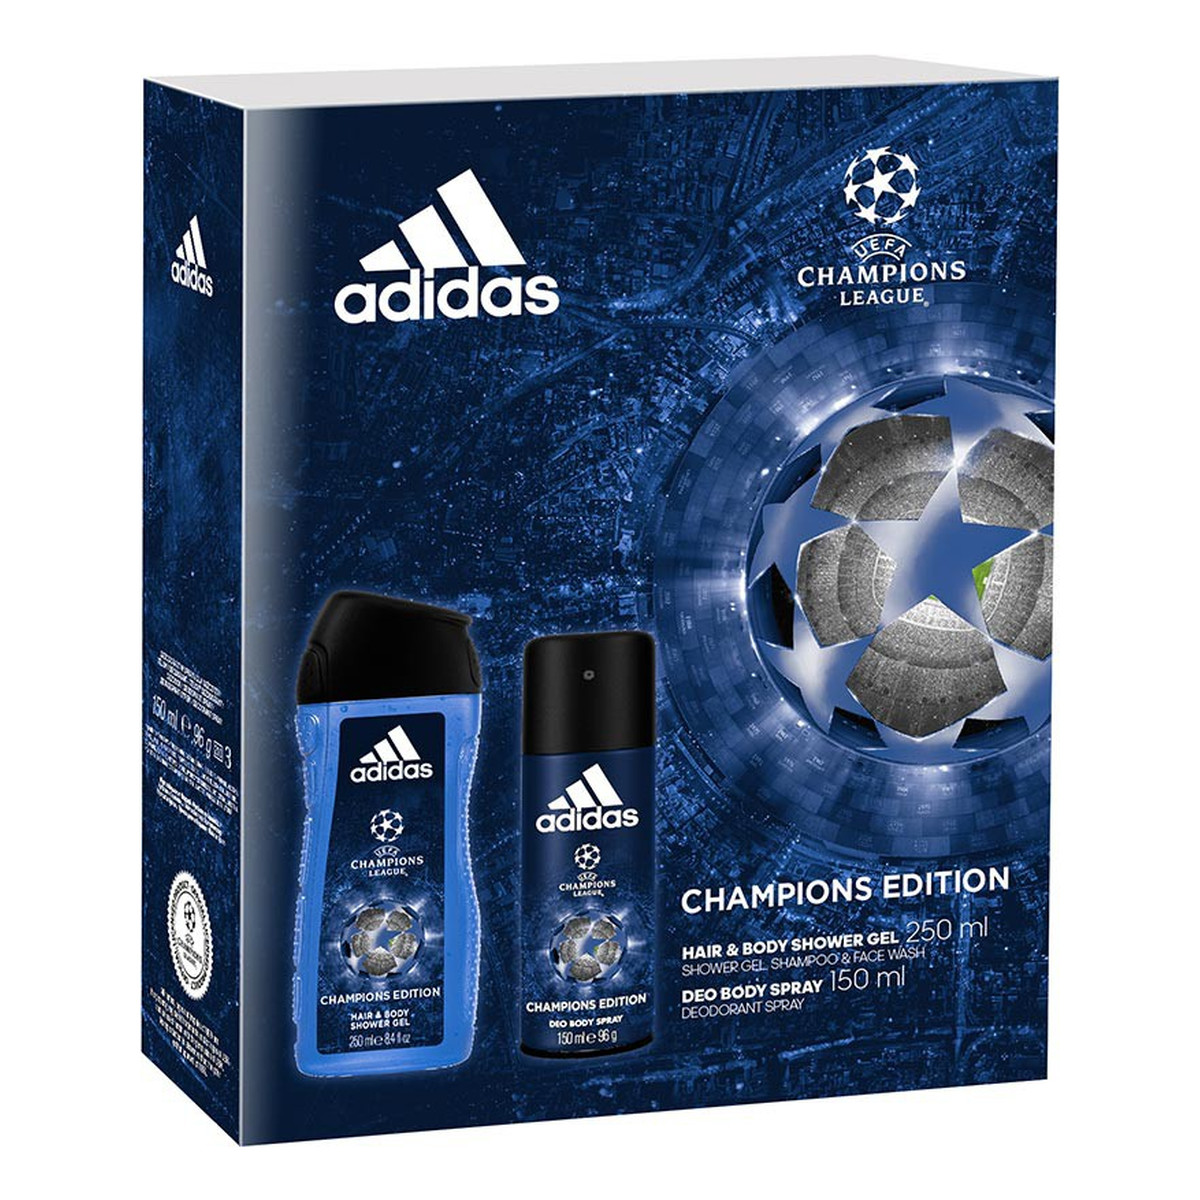 Adidas Champions Edition zestaw prezentowy męski 250ml